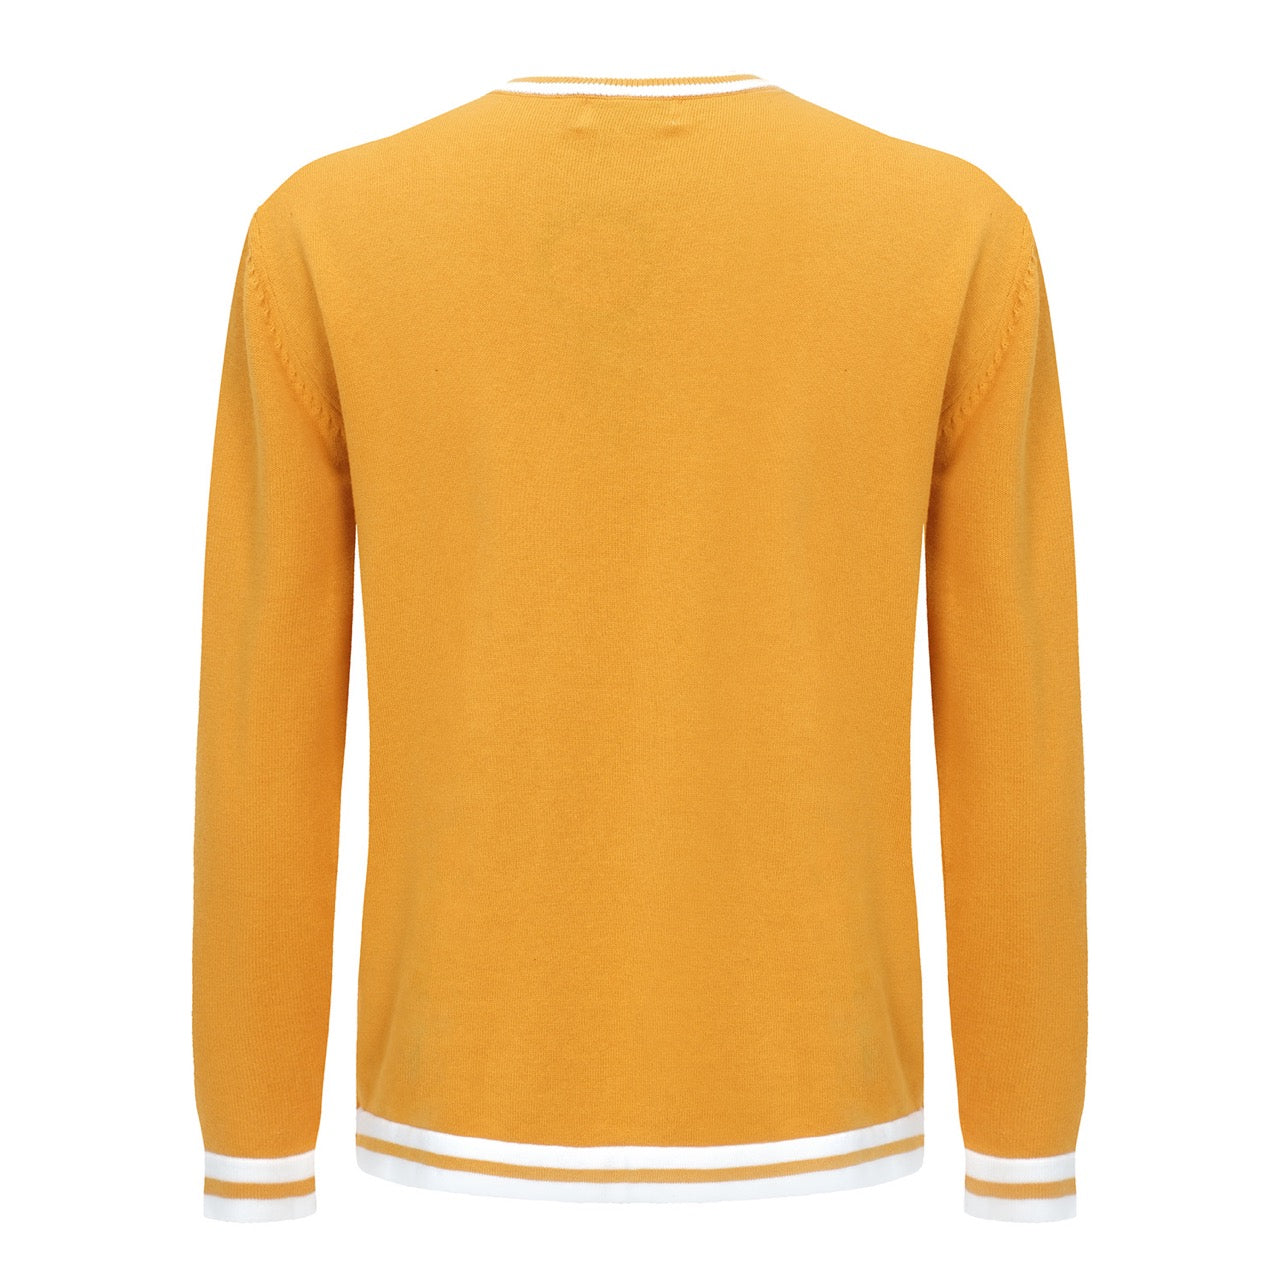 Ανδρικό Vintage κίτρινο πλεκτό μακρυμάνικο μασίφ μπλουζάκι